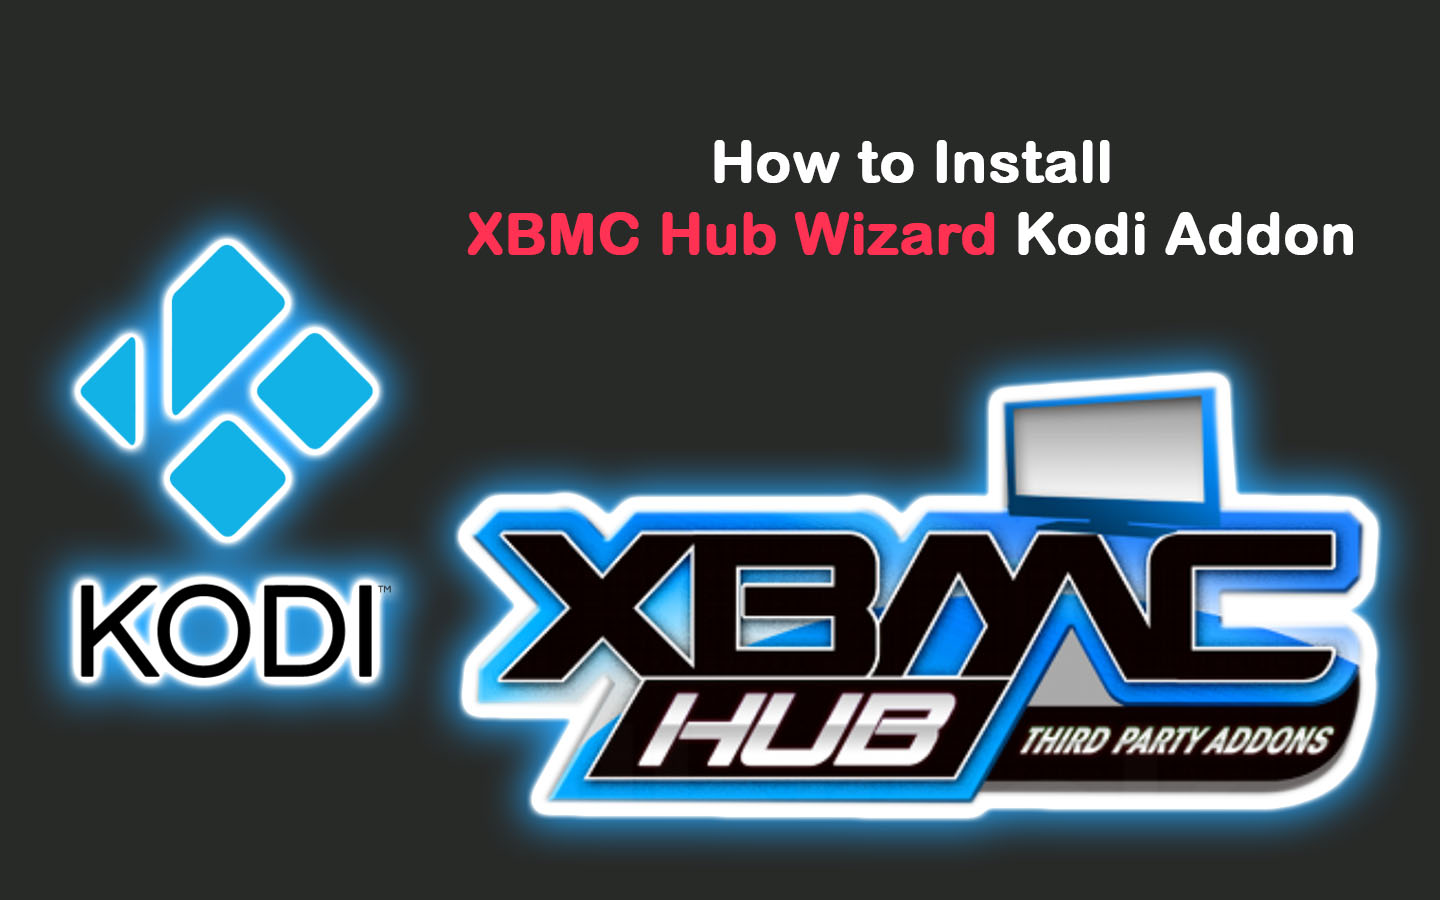 How to Install XBMC Hub Wizard Kodi Addon